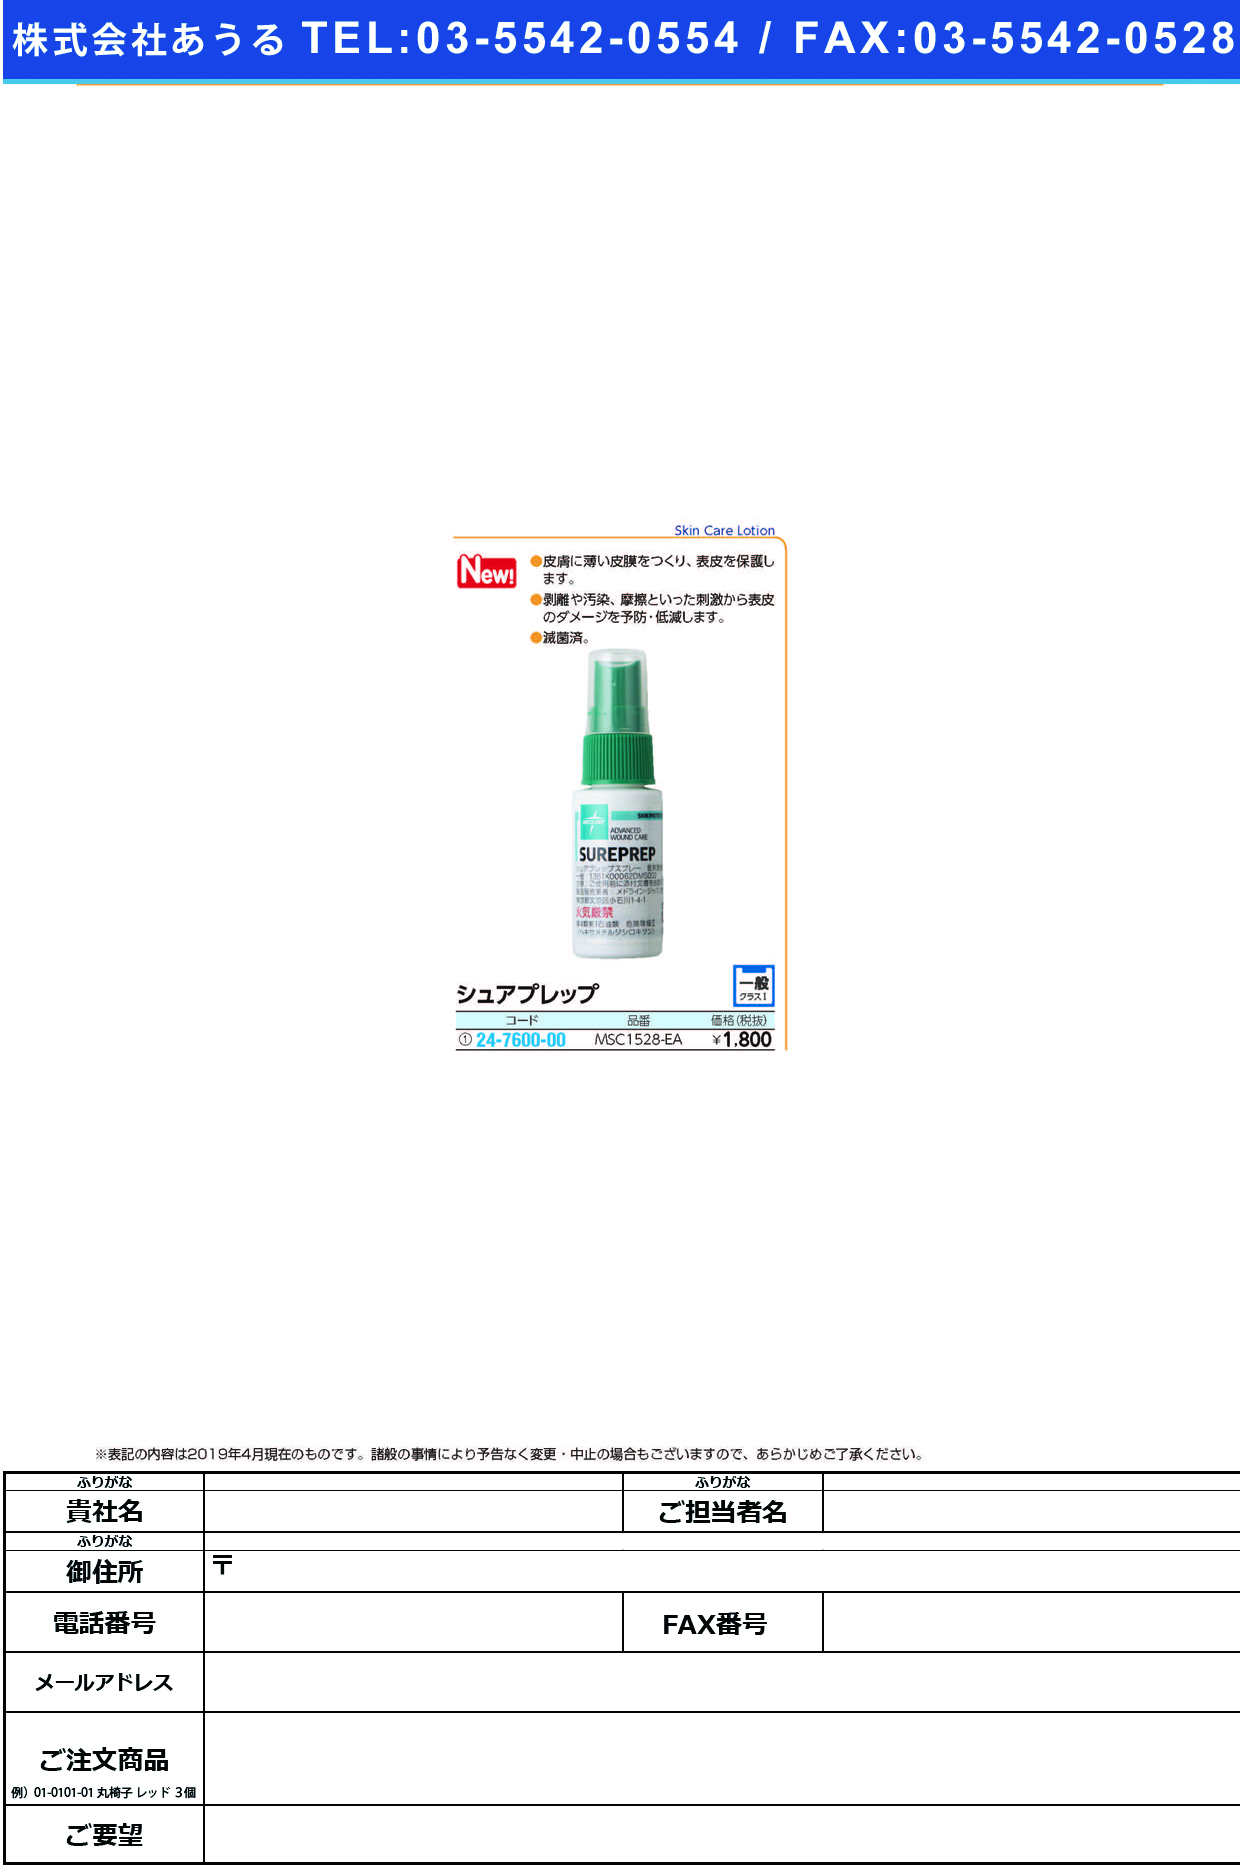 シュアプレップMSC1528-EA ｼｭｱﾌﾟﾚｯﾌﾟ(メドライン・ジャパン)